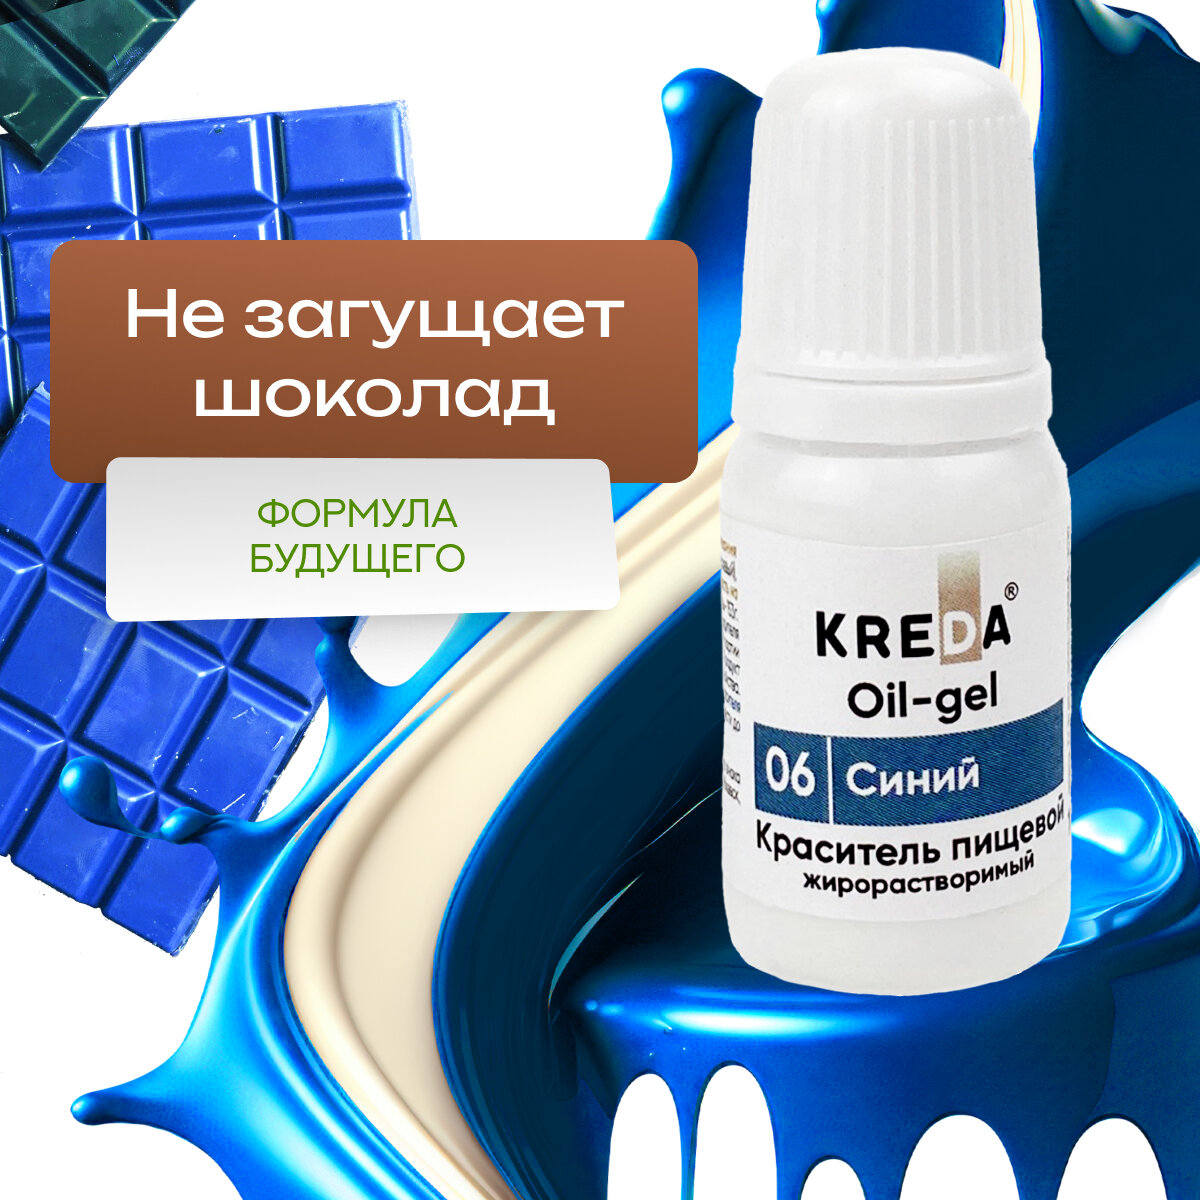 Краситель гелевый пищевой жирорастворимый Oil-gel KREDA синий №06, 10 мл